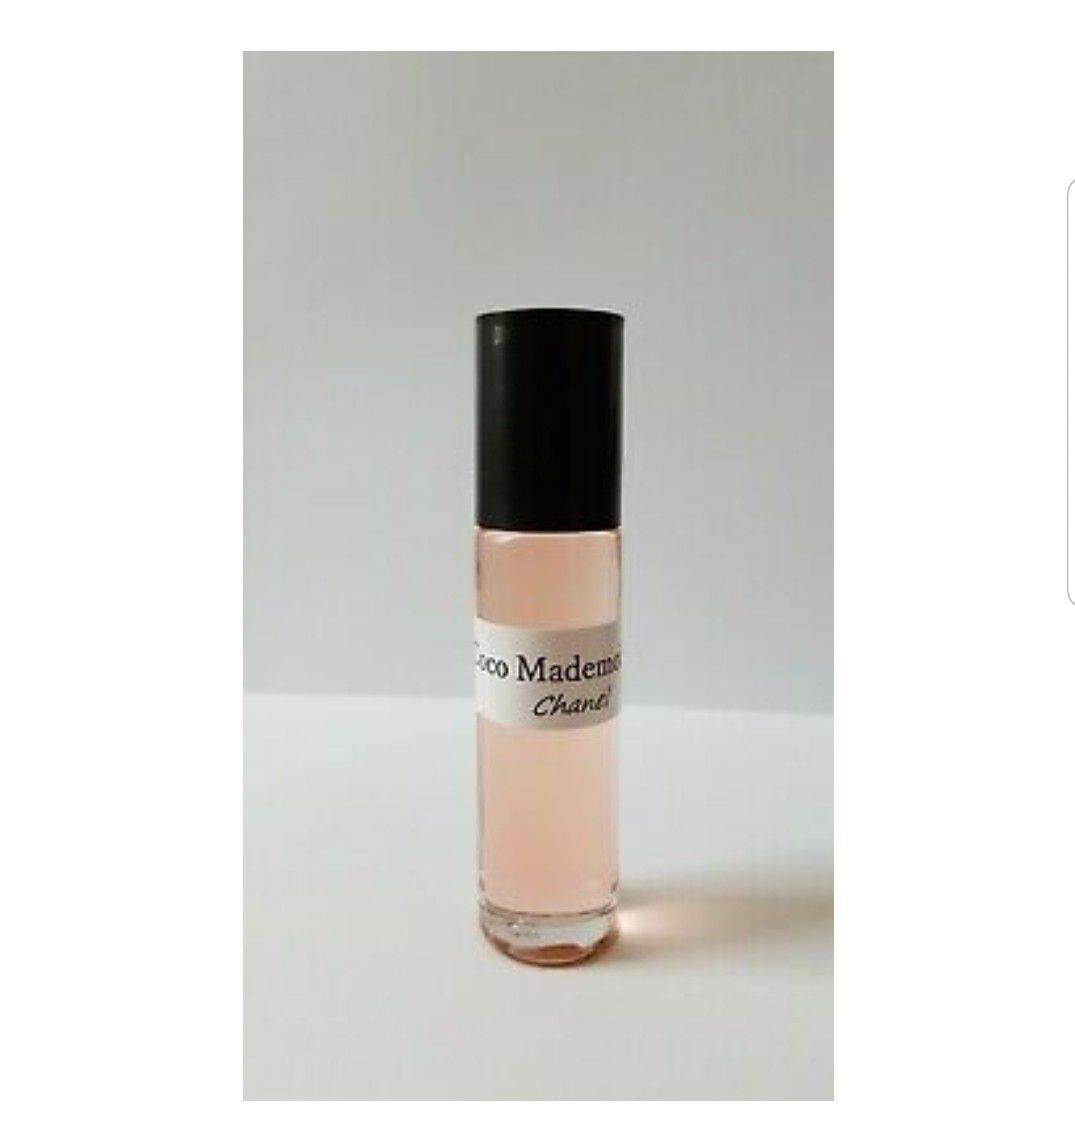 UNCUT Coco Mademoiselle Chanel TYPE Women Oil Perfume RollOn Body 10 ml